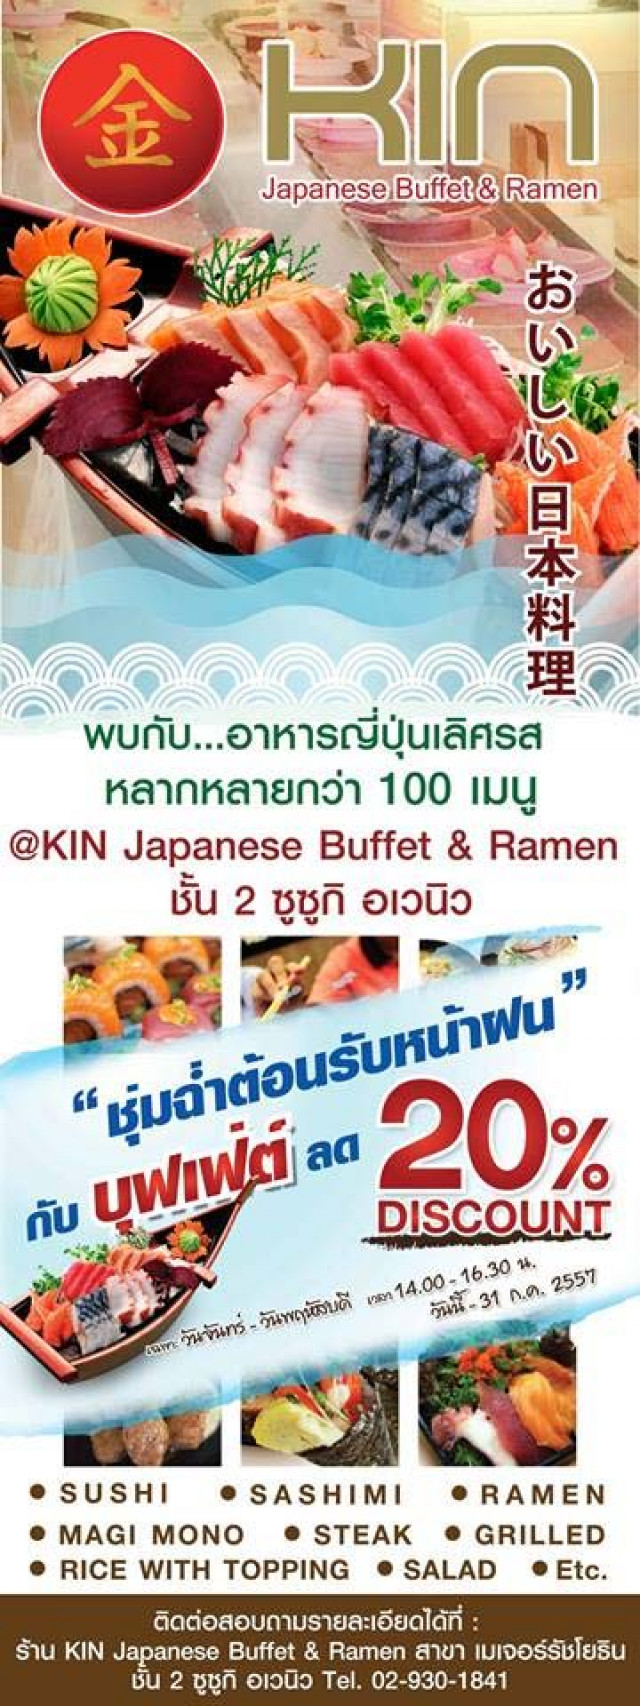 โปรโมชั่น KIN Japanese Buffet & Ramen ต้อนรับหน้าฝนกับบุฟเฟ่ต์ลด 20%